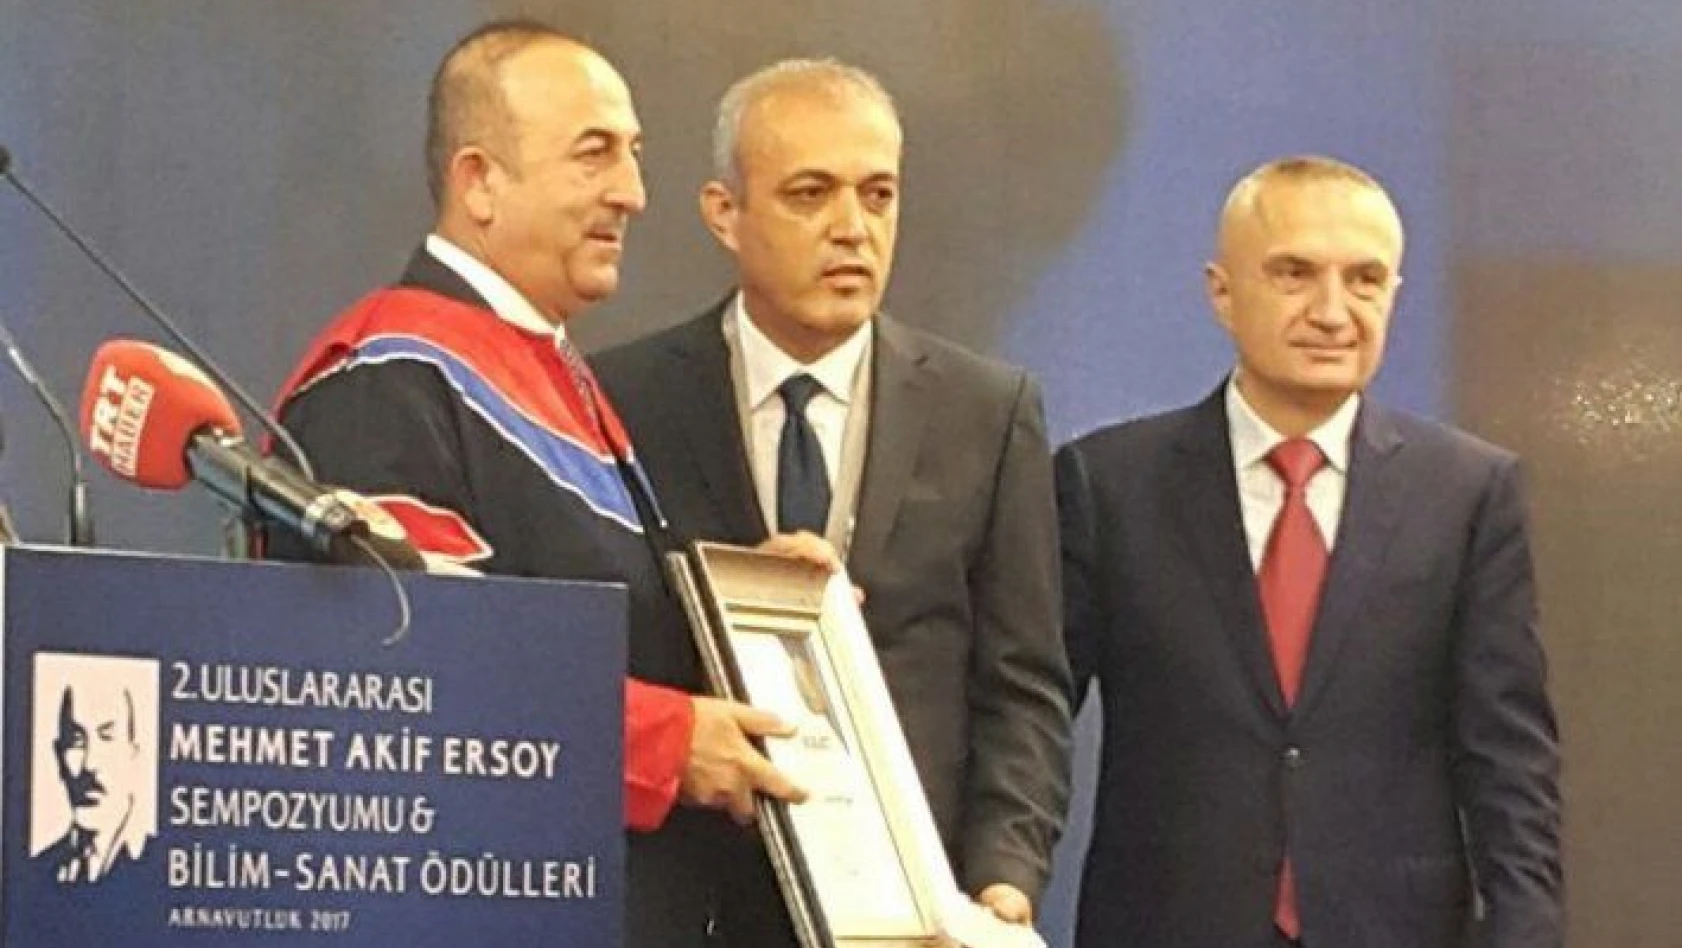 Mehmet Akif Ersoy 2017 Bilim Ödülü' ERÜ Bilim Adamına Verildi 